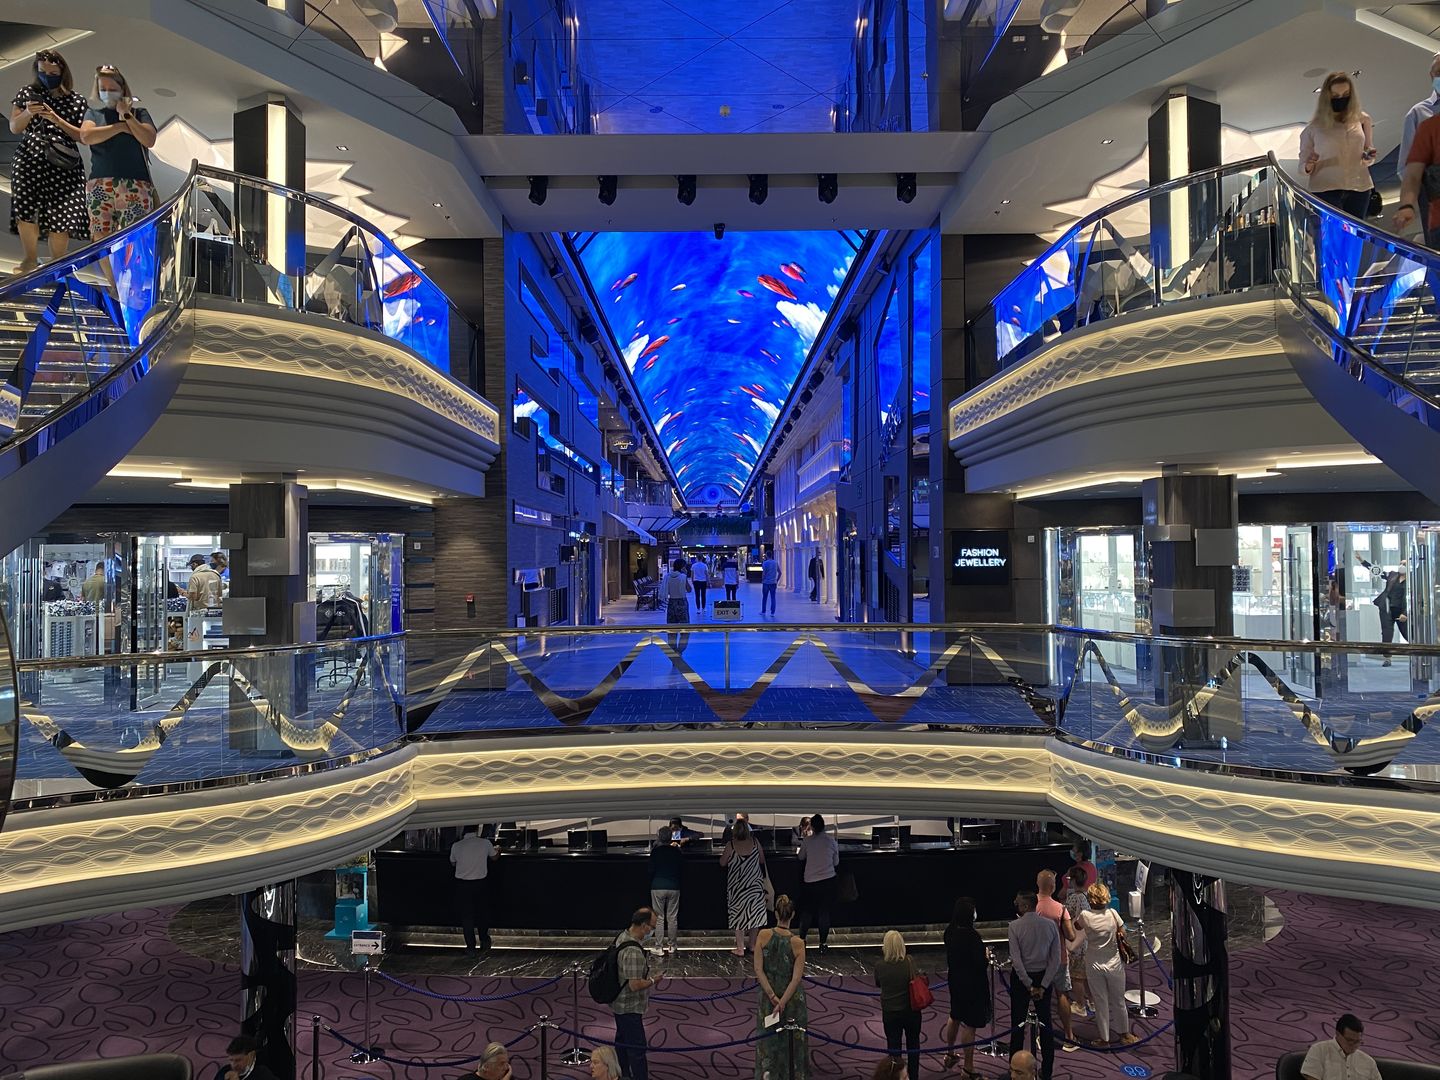 Beeindruckend: Cafes, Bars, Restaurants und eine riesige LED-Decke laden auf Deck 6 zum Bummeln ein